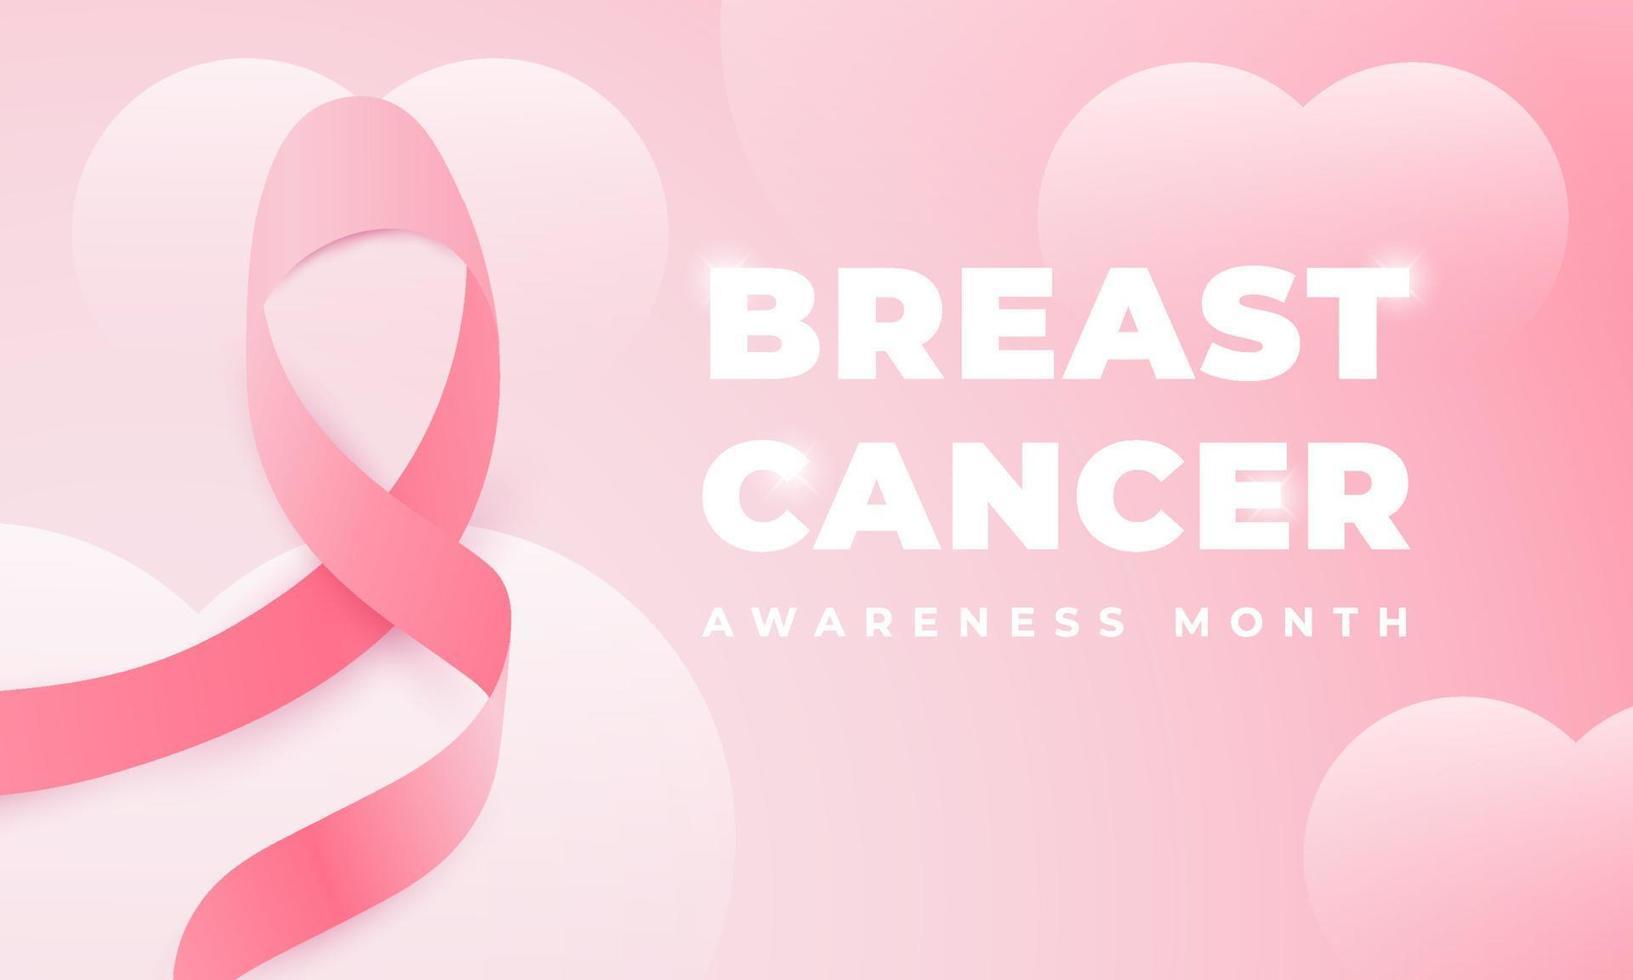 Brustkrebs-Bewusstseinsmonat, geeignet für Hintergründe, Banner, Poster und andere vektor